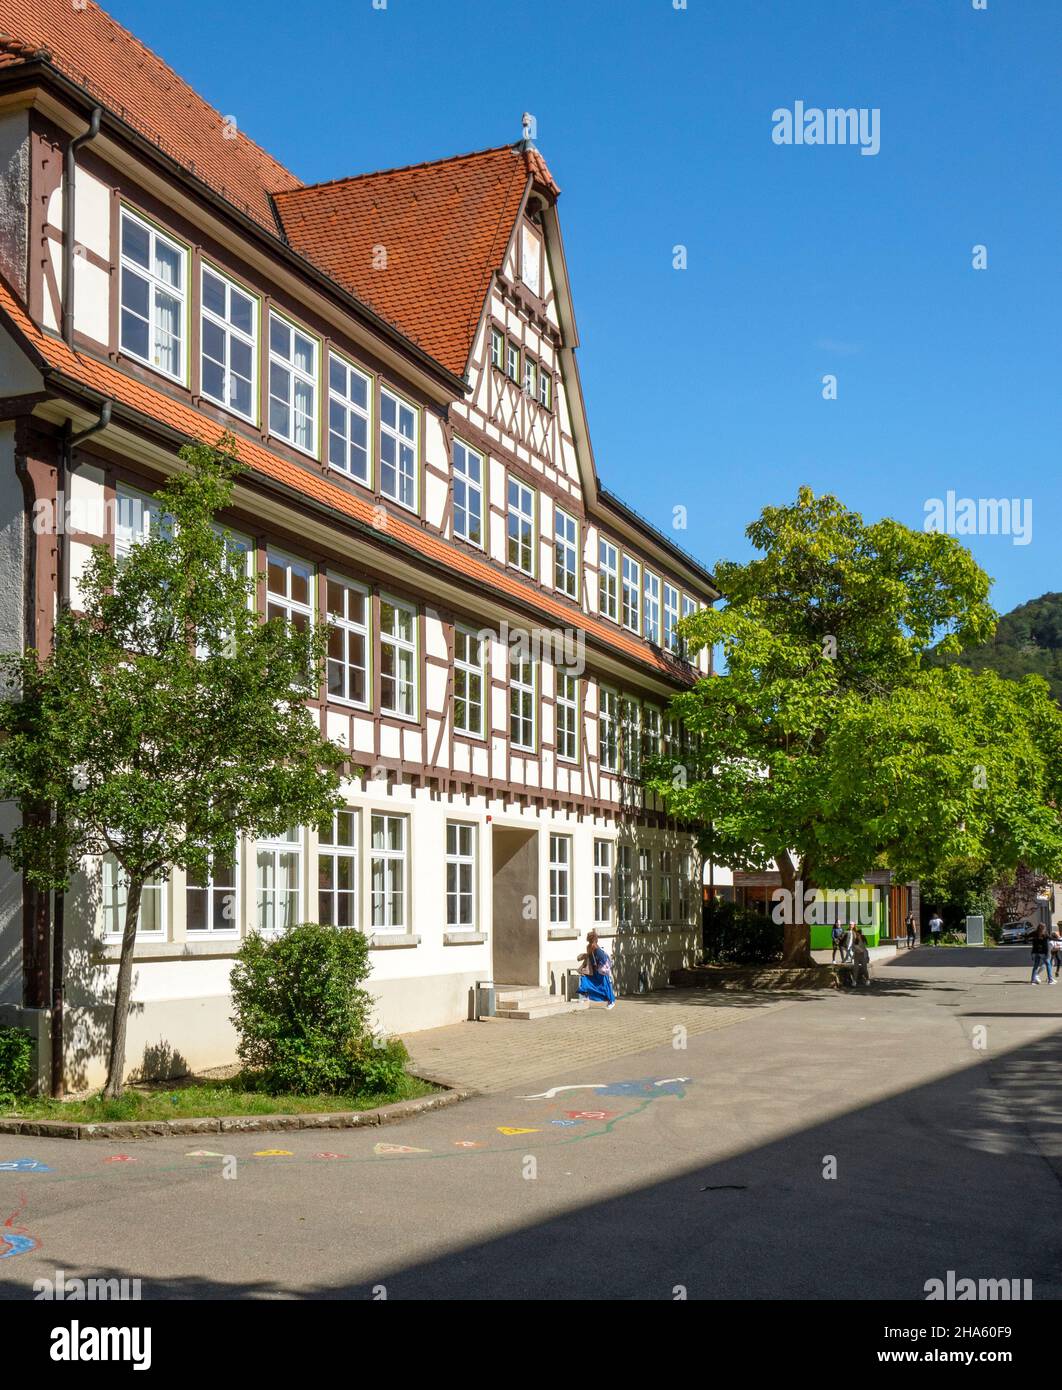 l'ospedale è stato fondato nel 1480 dal conte eberhard v. im bart. esisteva in parte fino al 1948. oggi, la scuola di comunità barbara gonzaga si trova nel distretto ospedaliero, bad urach, baden-württemberg, germania Foto Stock